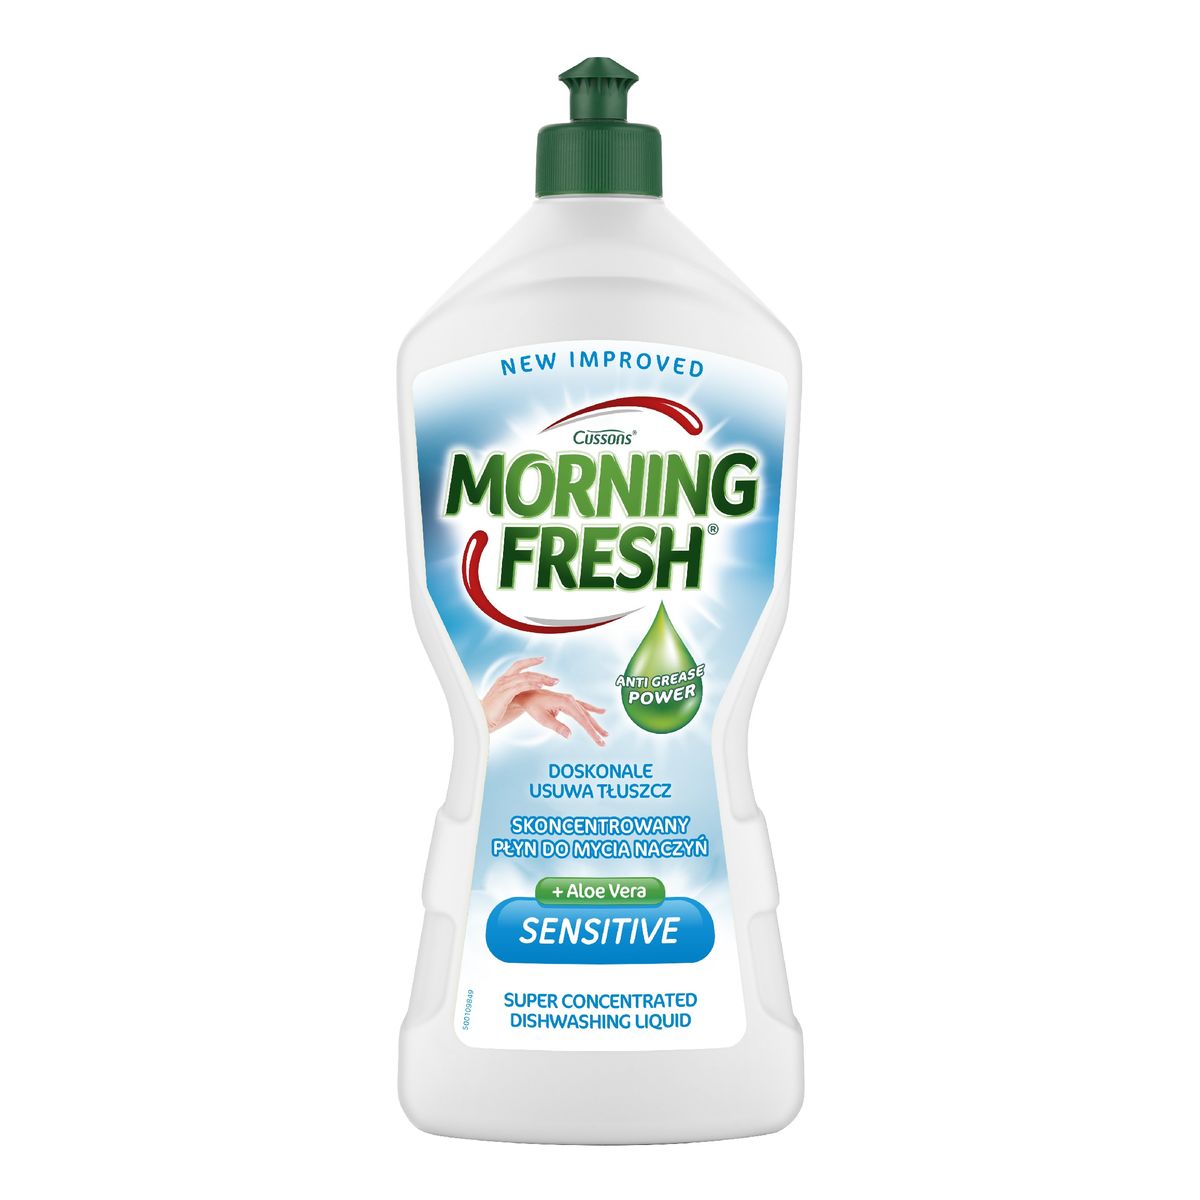 Morning Fresh skoncentrowany płyn do mycia naczyń-sensitive 900ml